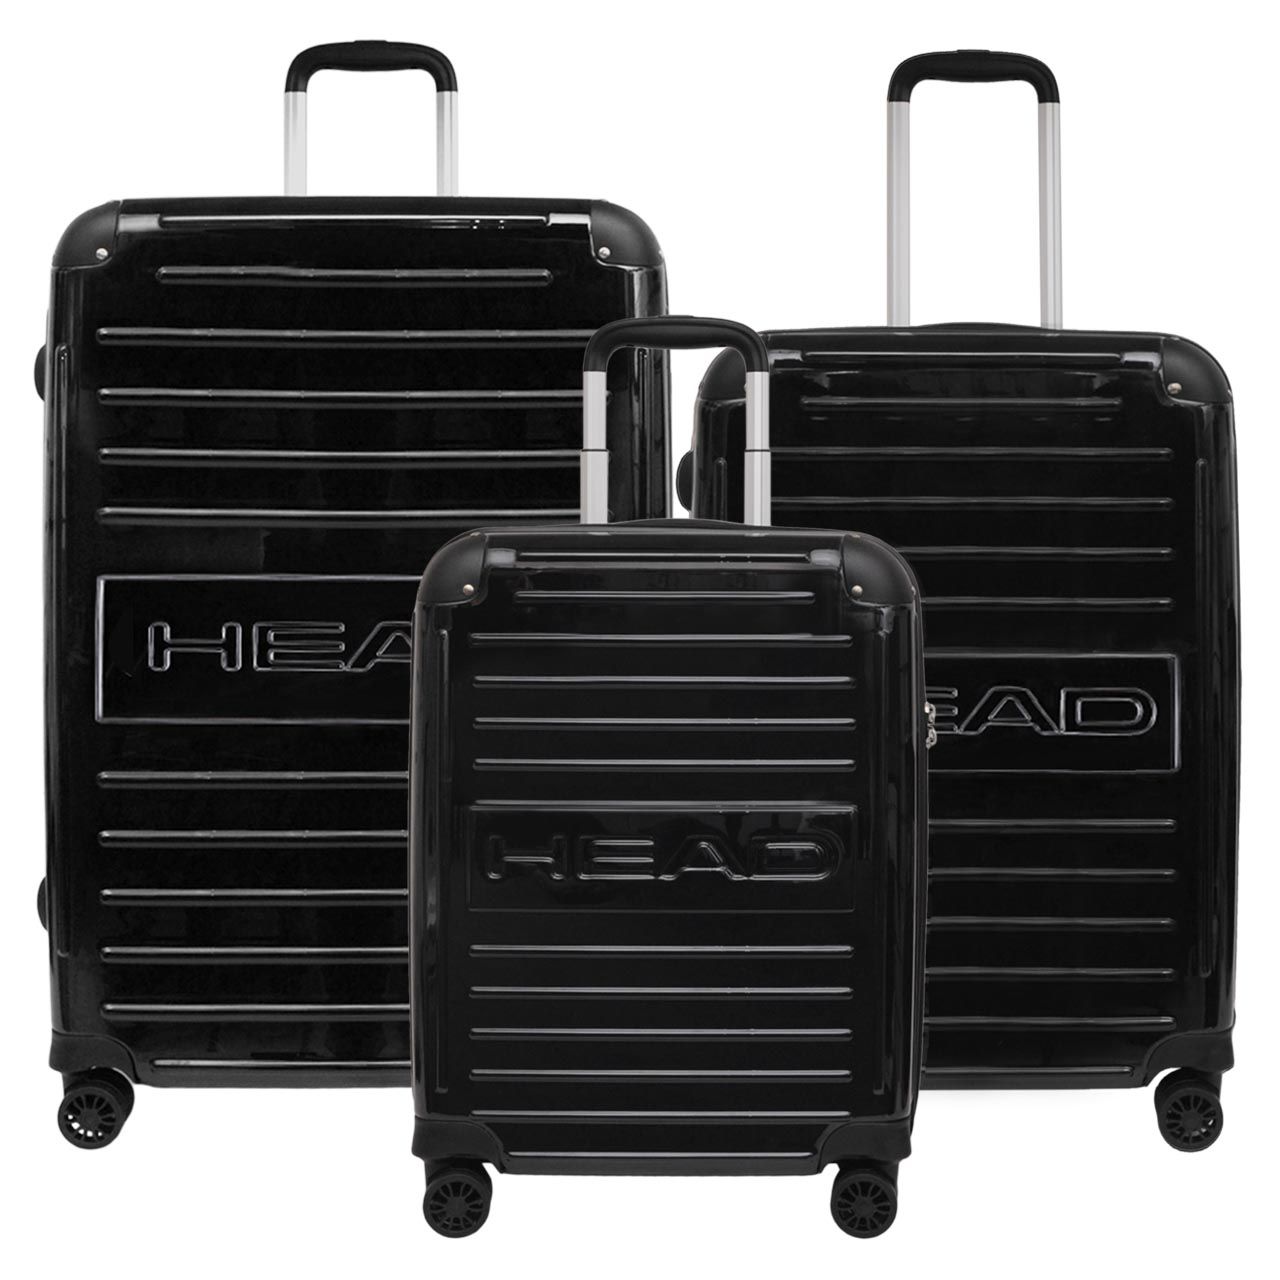 مجموعه سه عددی چمدان هد مدل HL 001 -  - 2